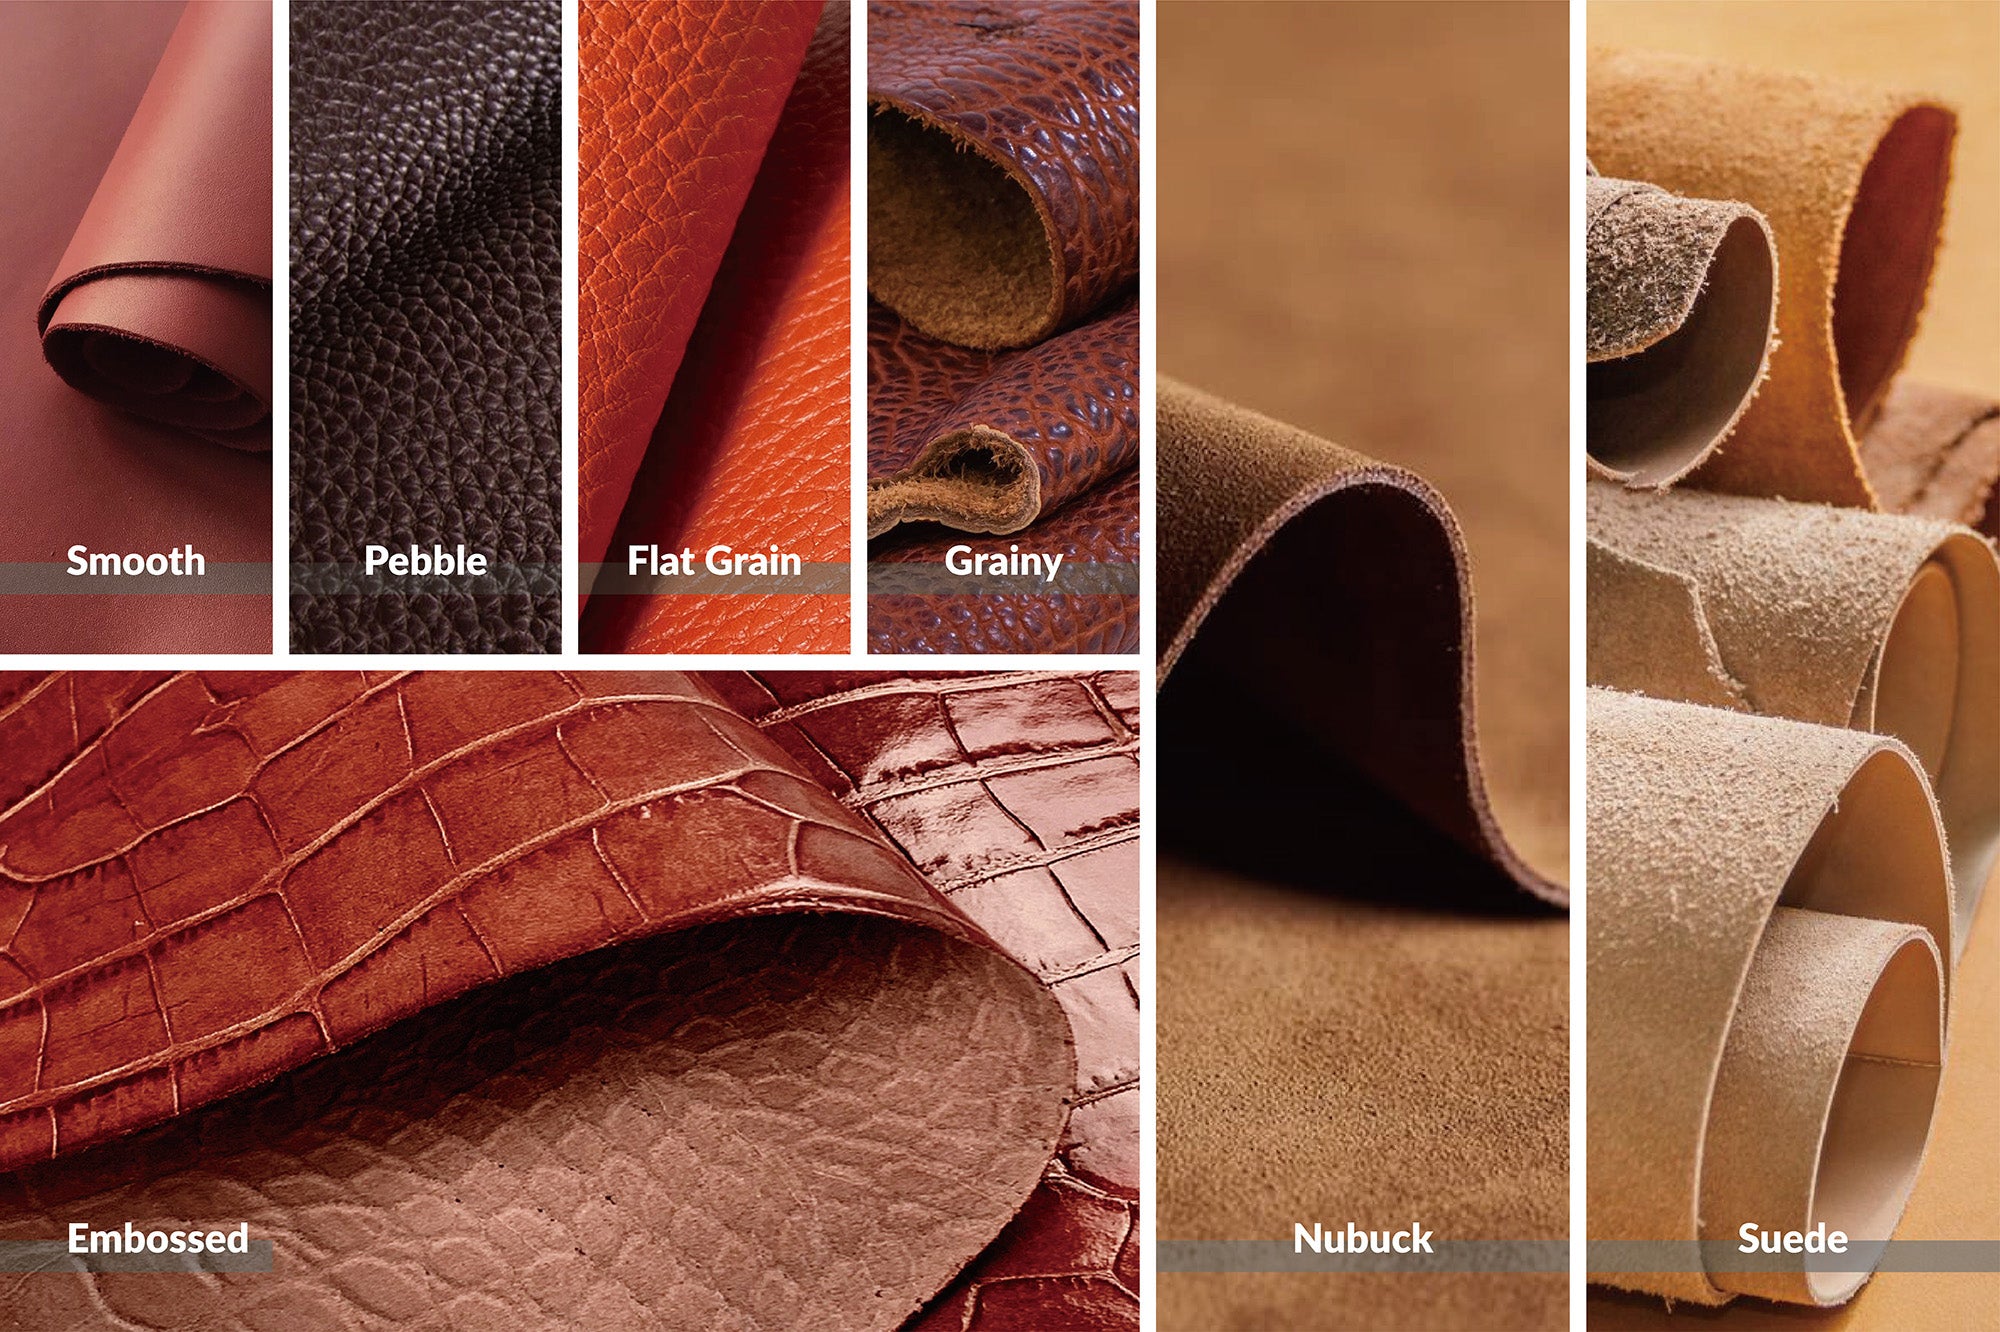 常見的皮革紋理和質感-平滑皮革、粒面皮革、平面皮革、鵝卵石紋皮革、壓花皮革、粗糙絨面皮革